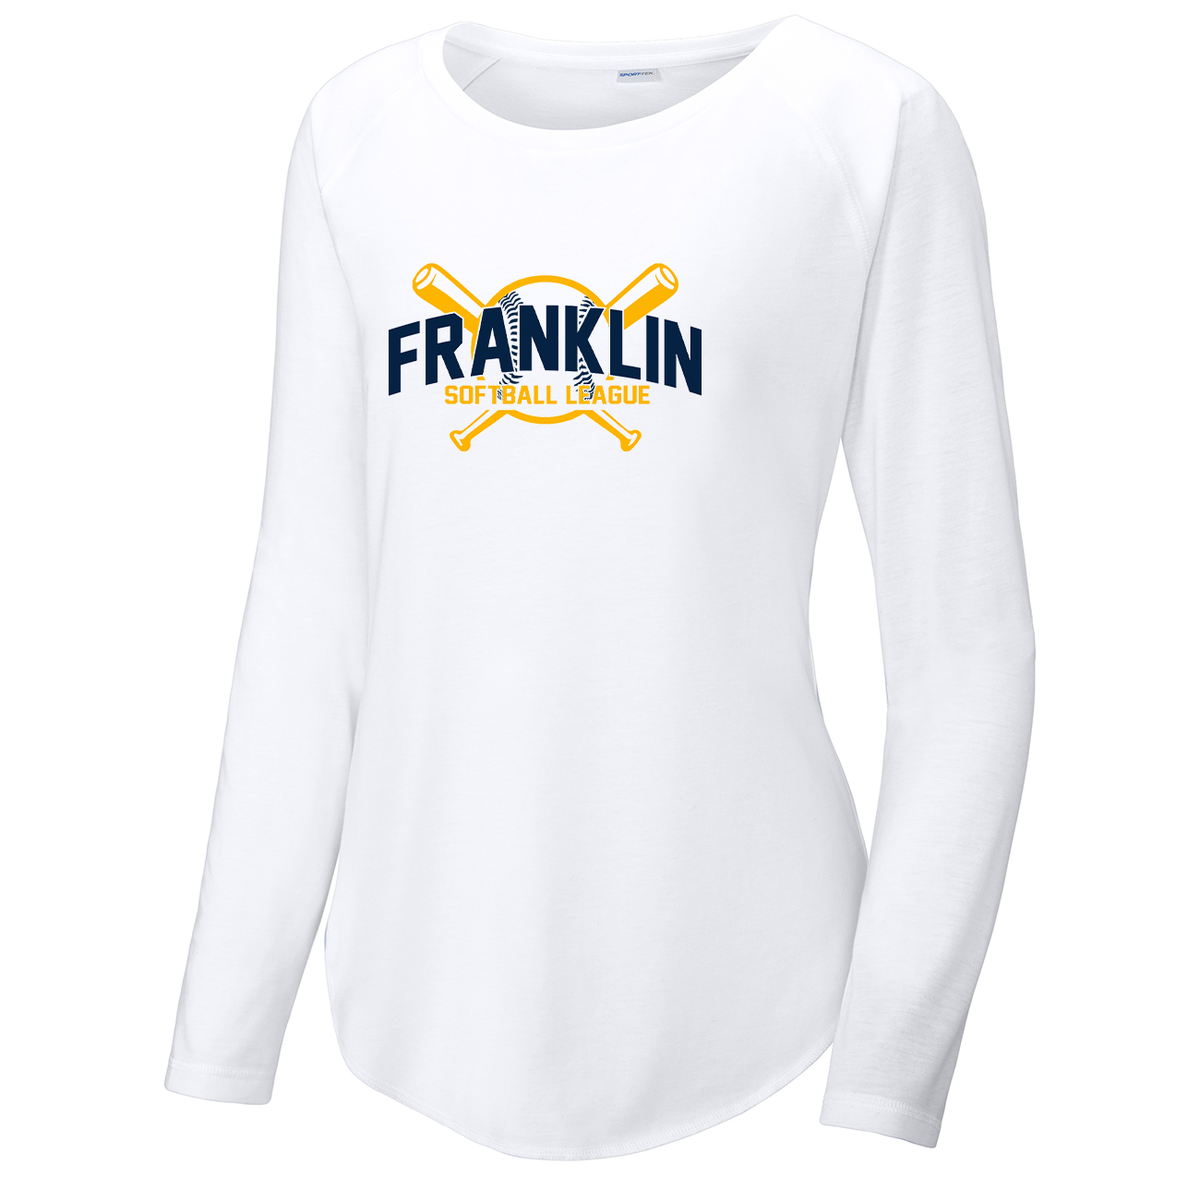 Franklin Township Softball League Women's Raglan Long Sleeve CottonTouch